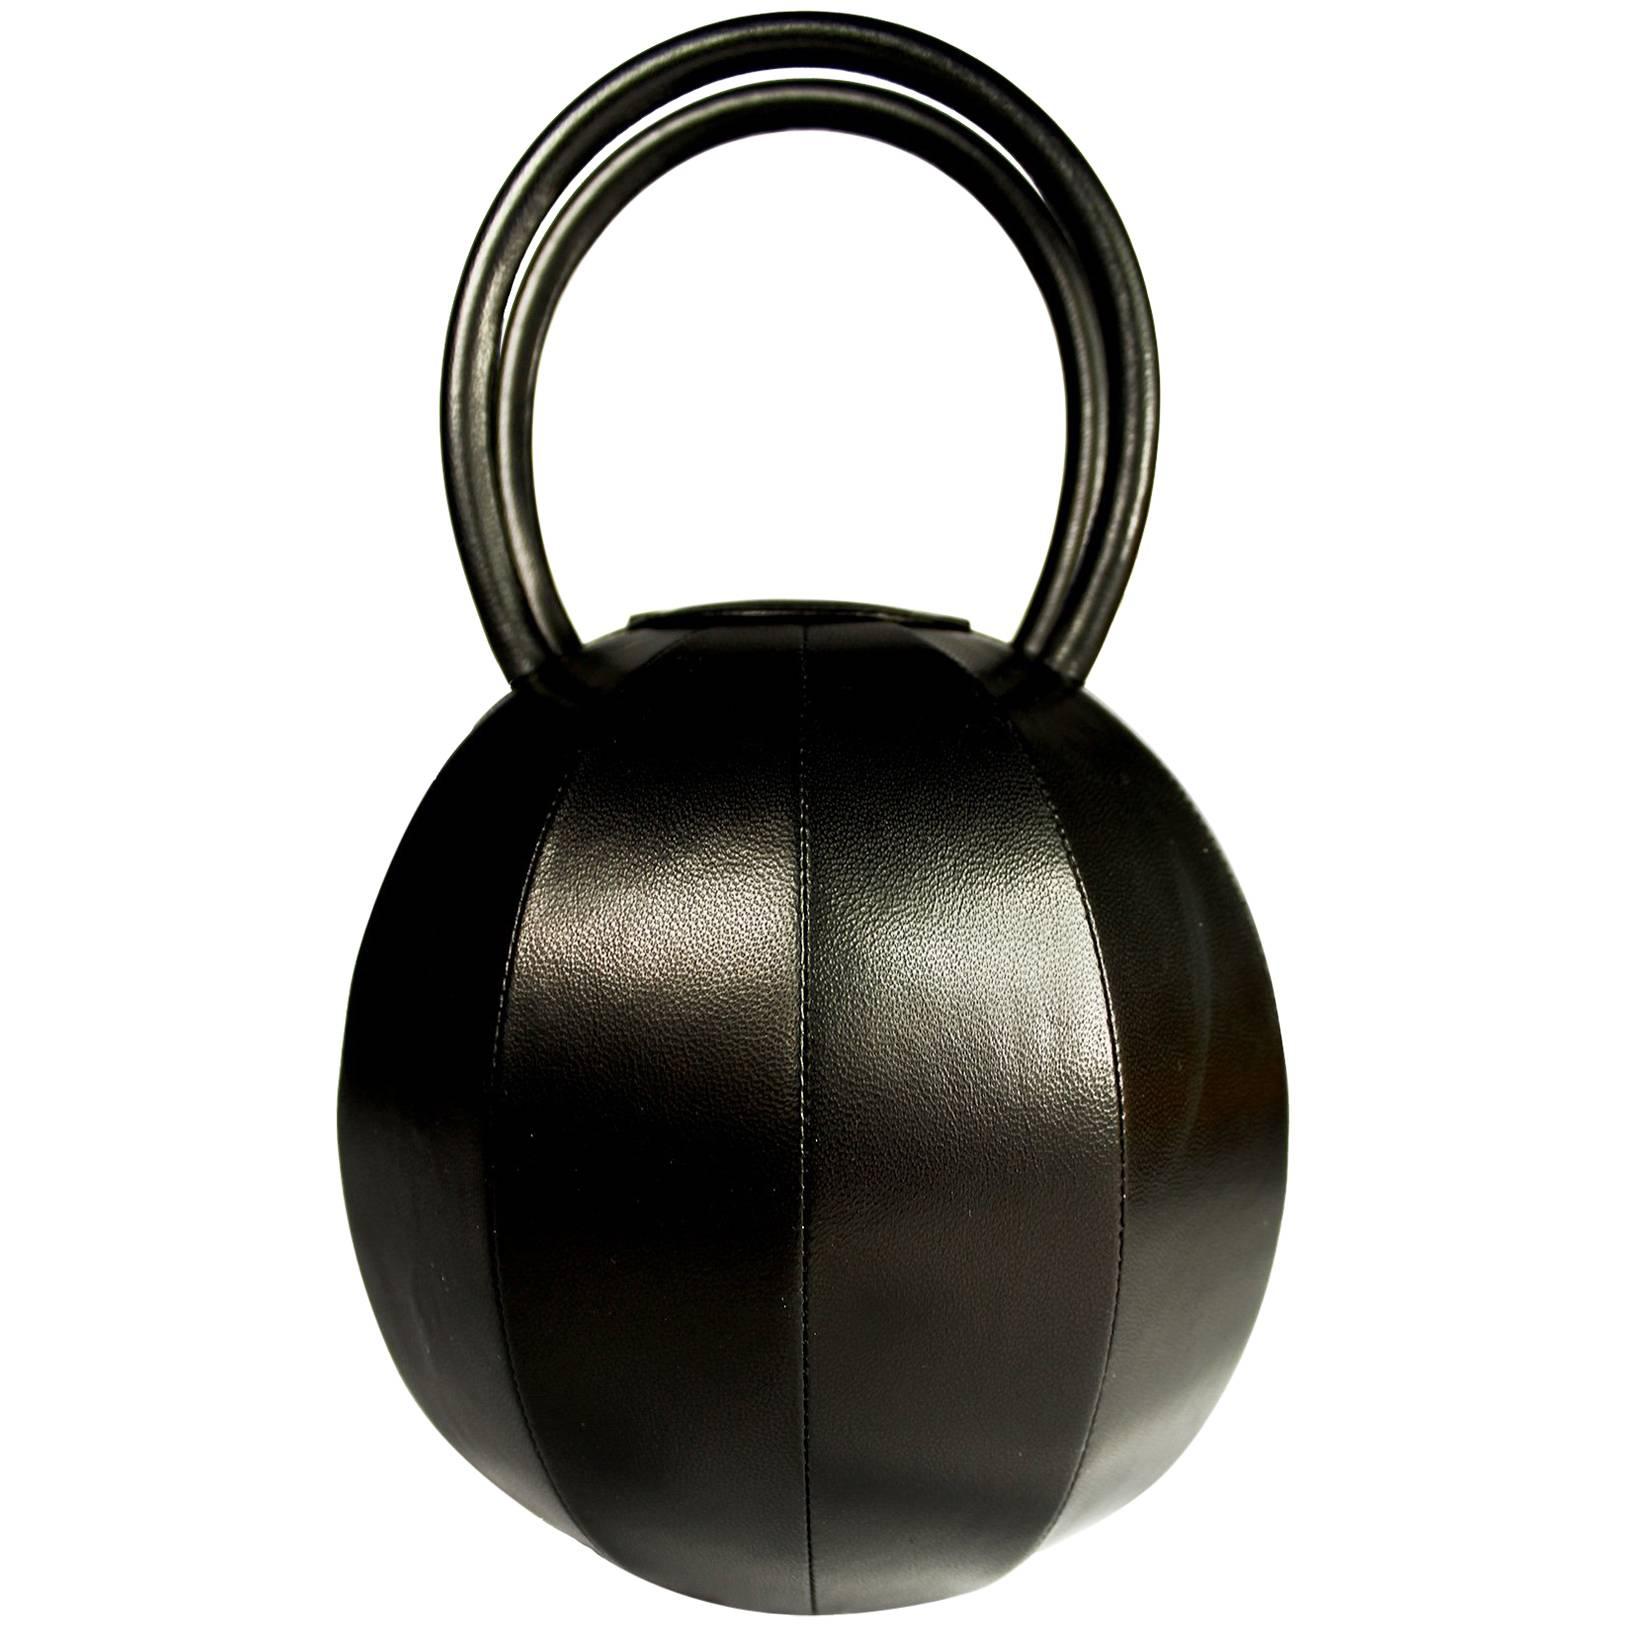 NitaSuri Pilo Black Leather Sphere Handbag For Sale